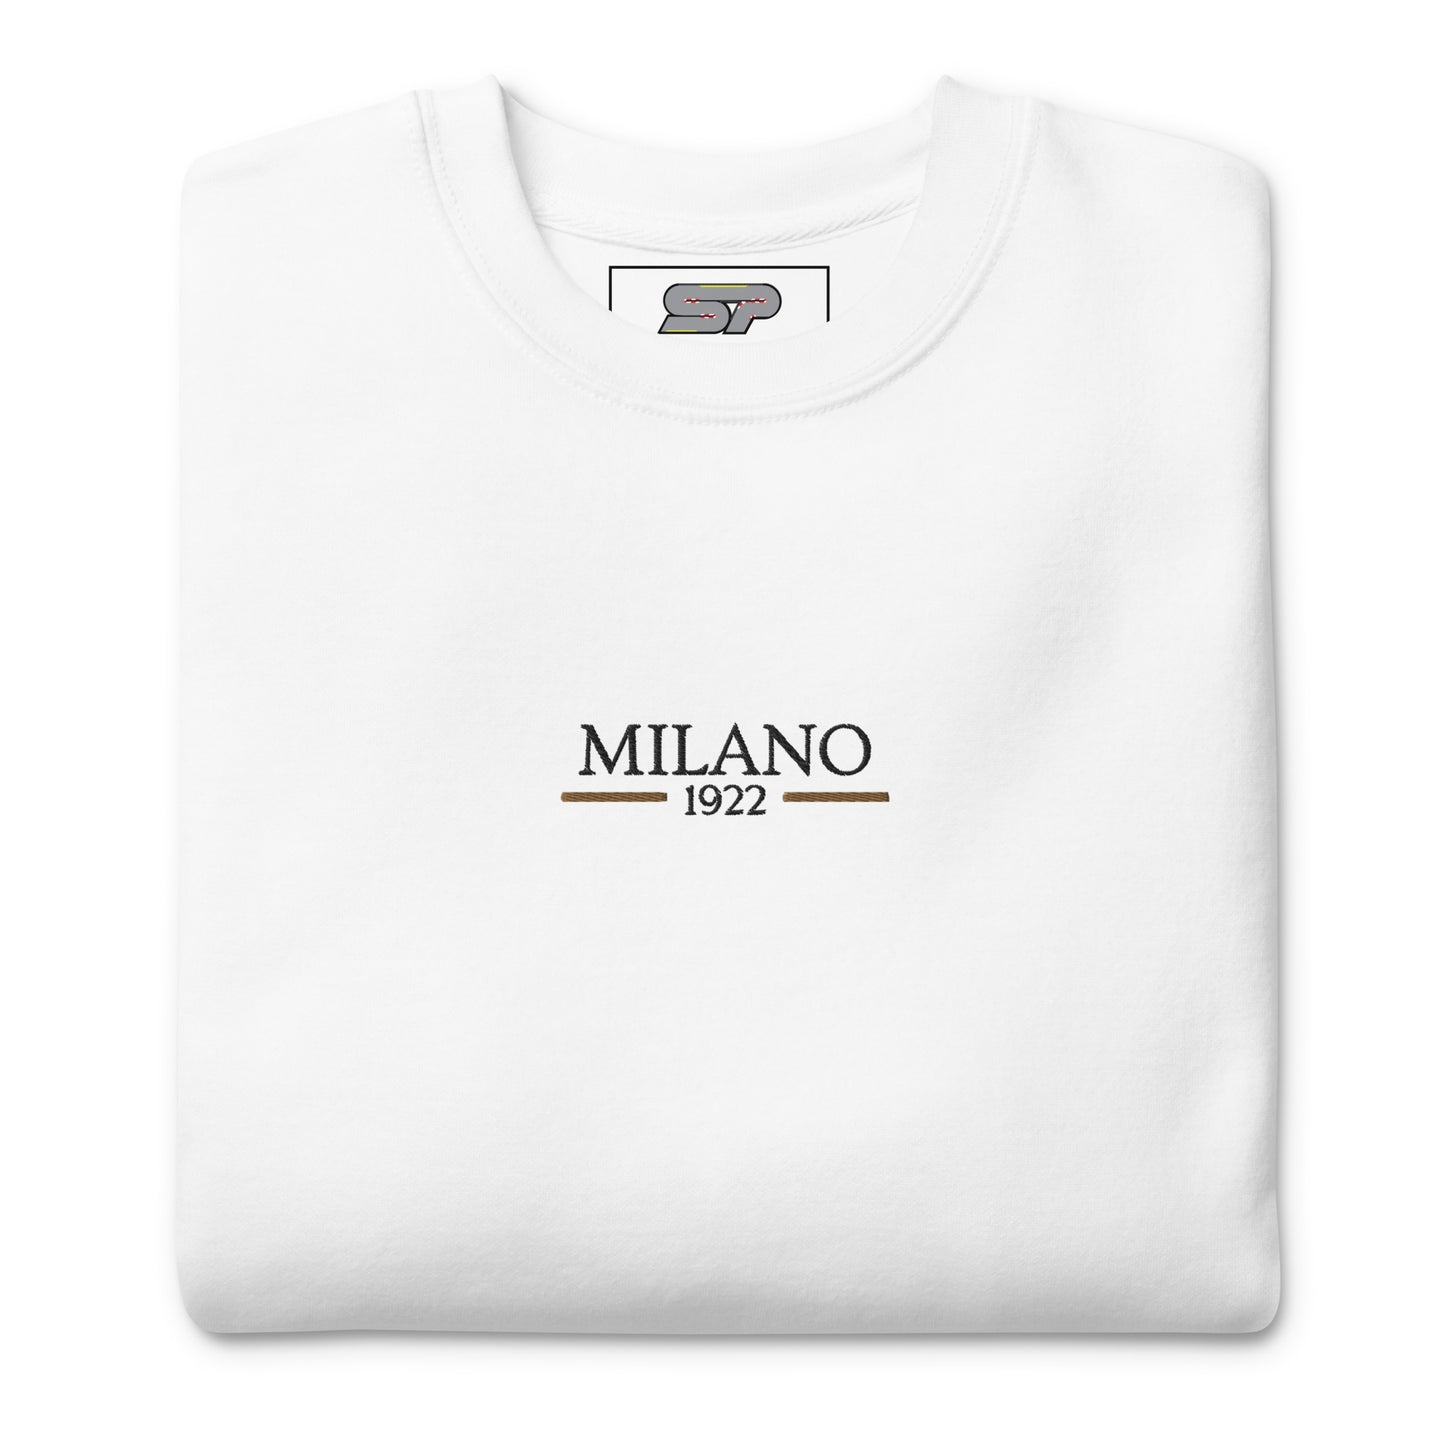 Milano 1922 Crewneck - White